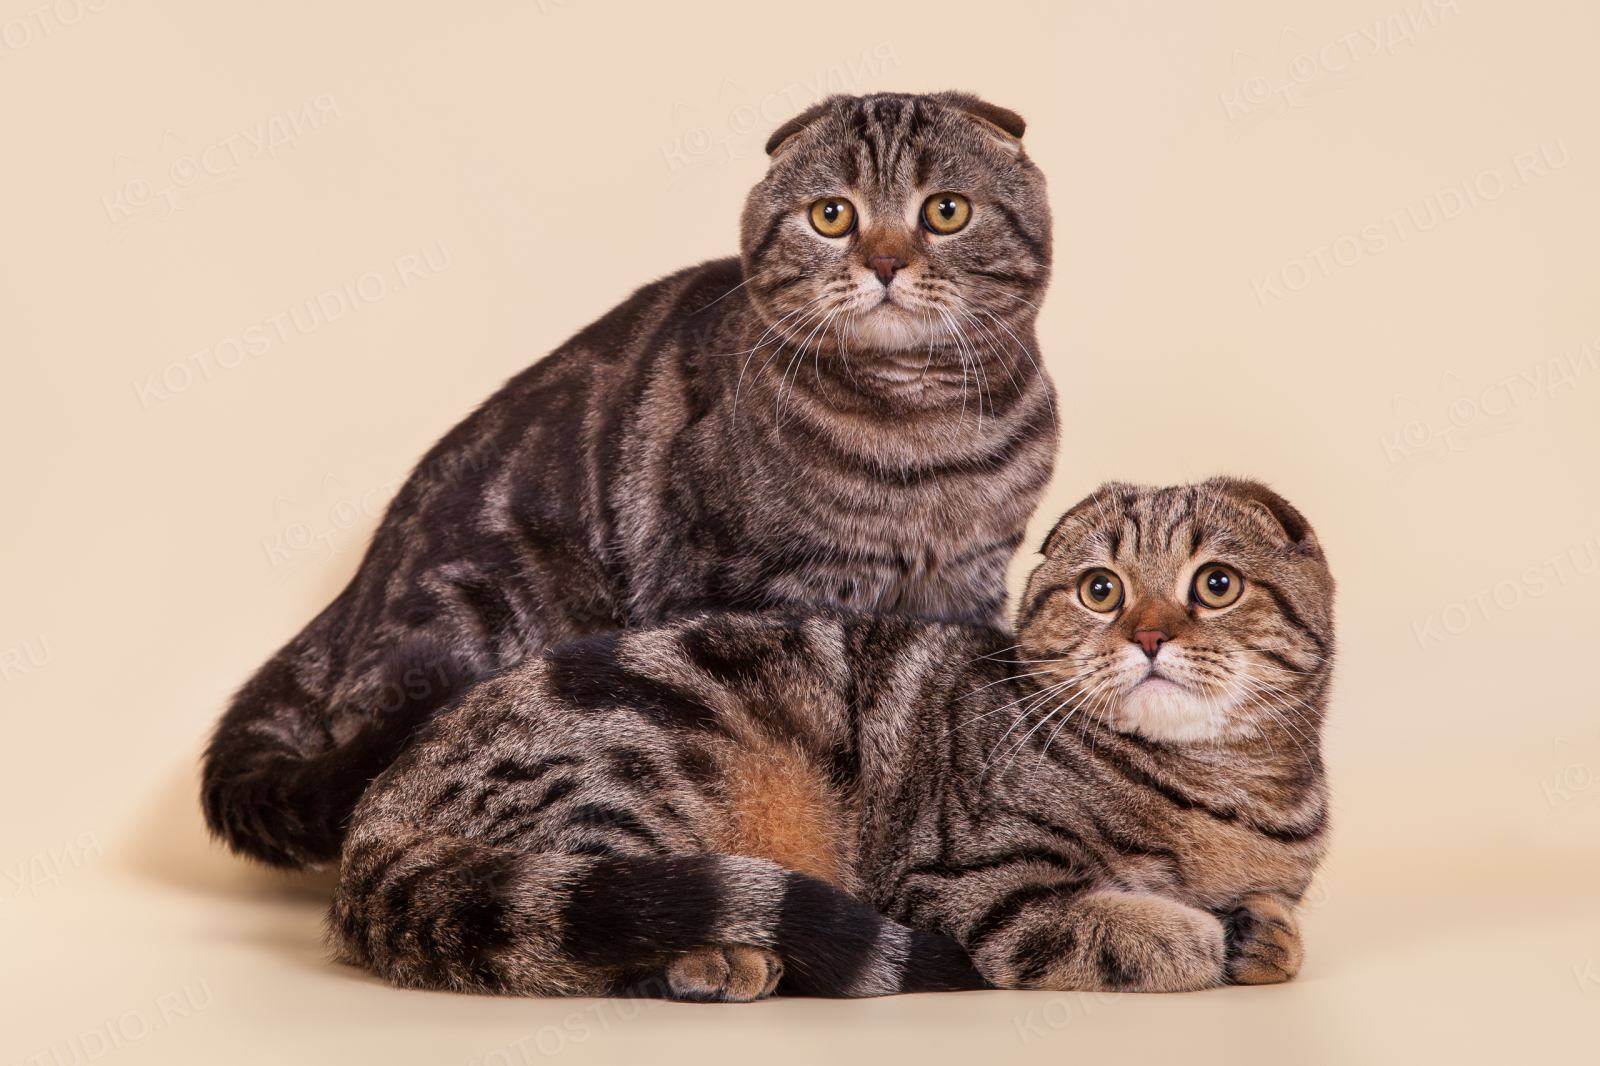 Хайленд-фолд: фото кошки, цена котенка, описание породы и характера